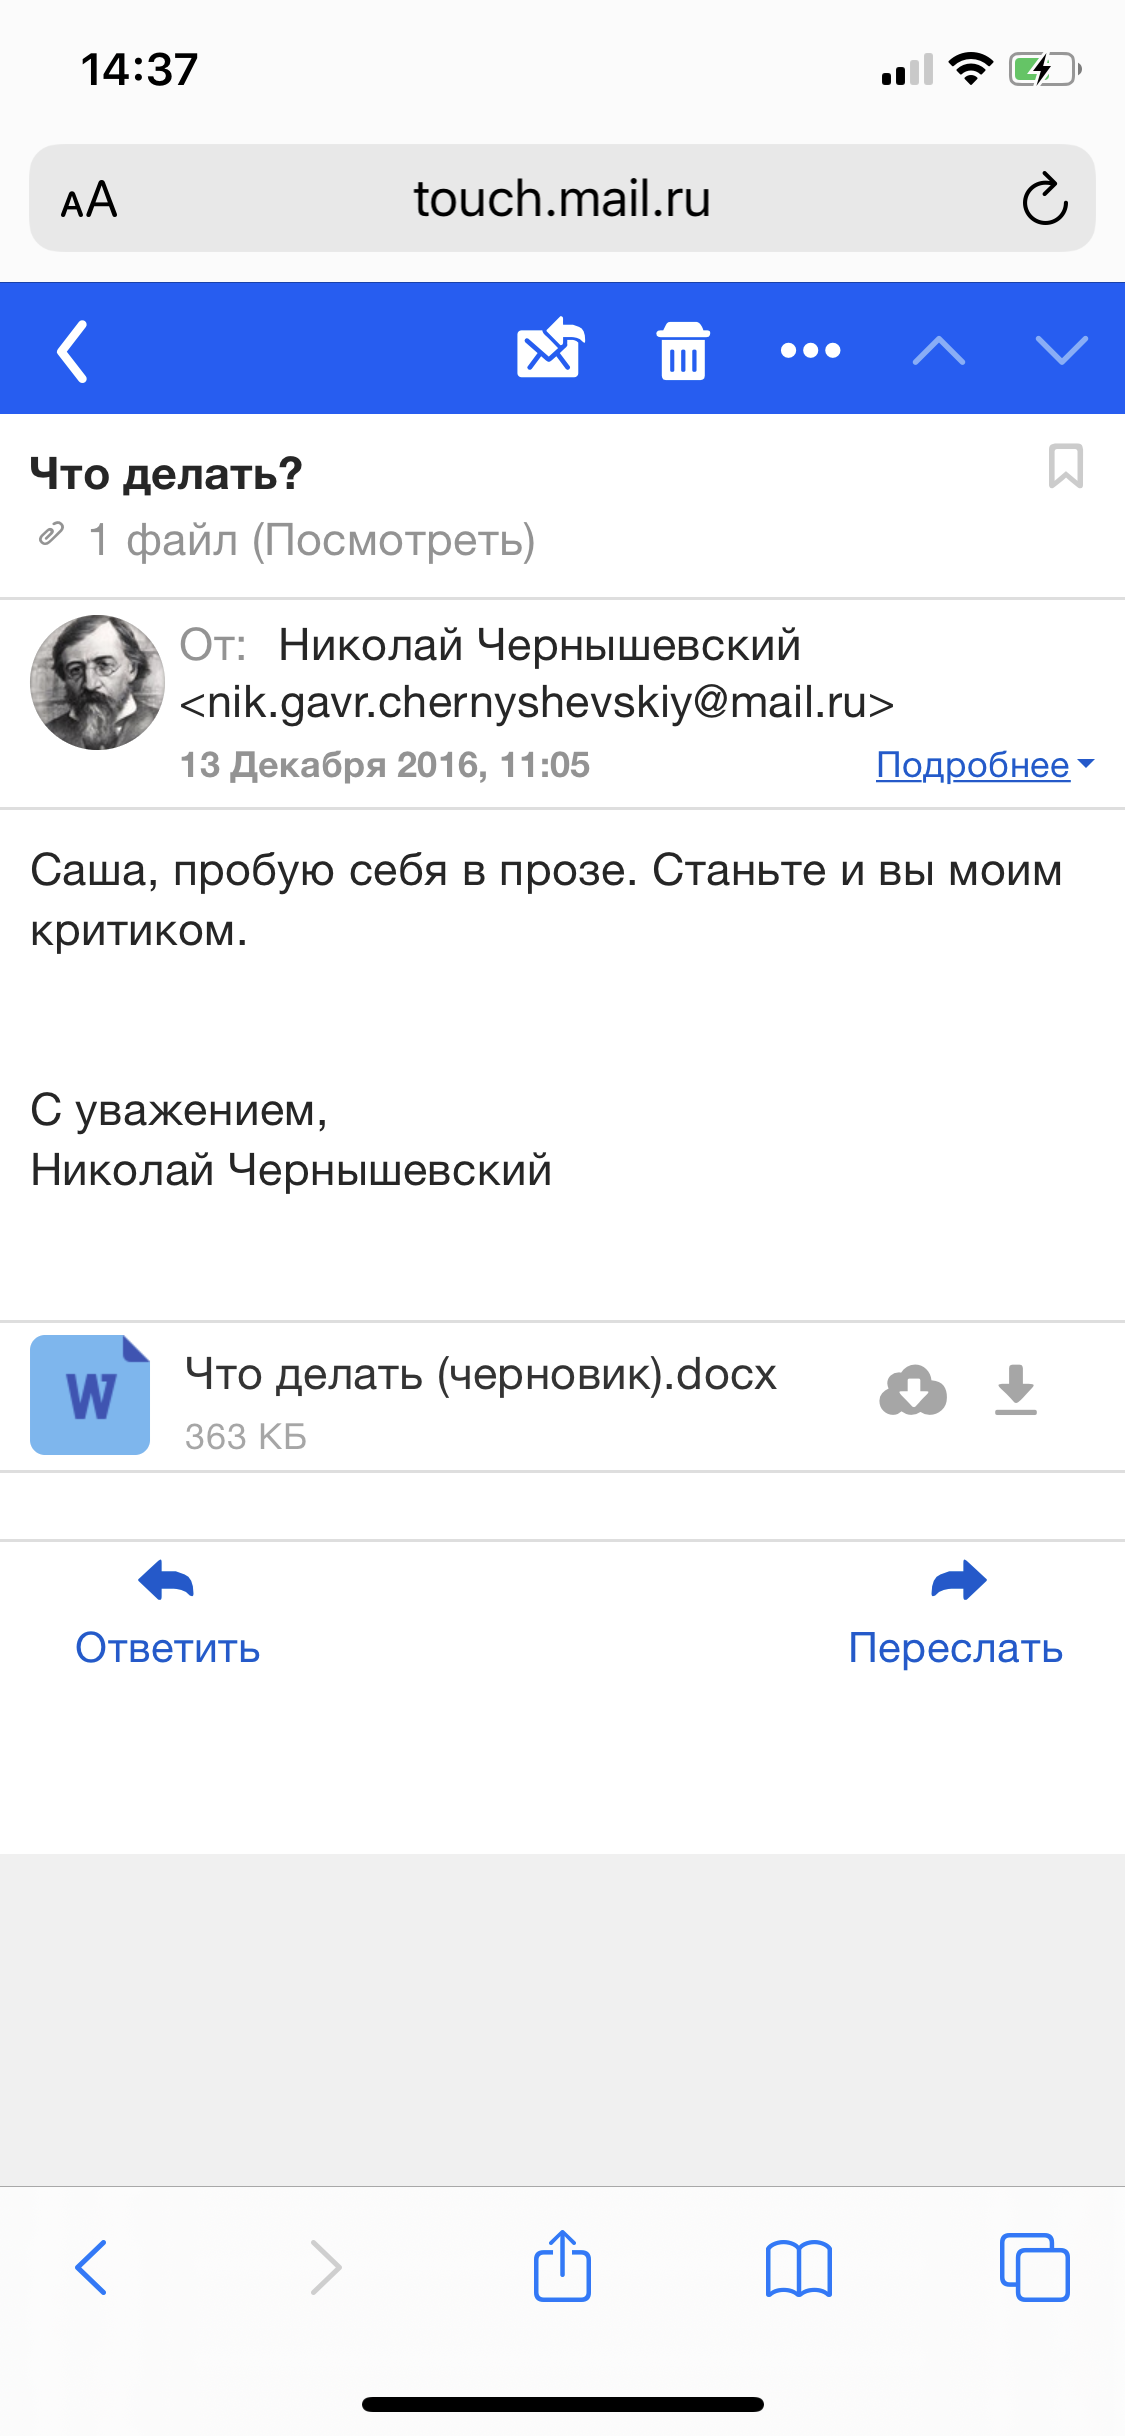 Как настроить почту Mail.ru на iPhone через стандартное приложение Почта